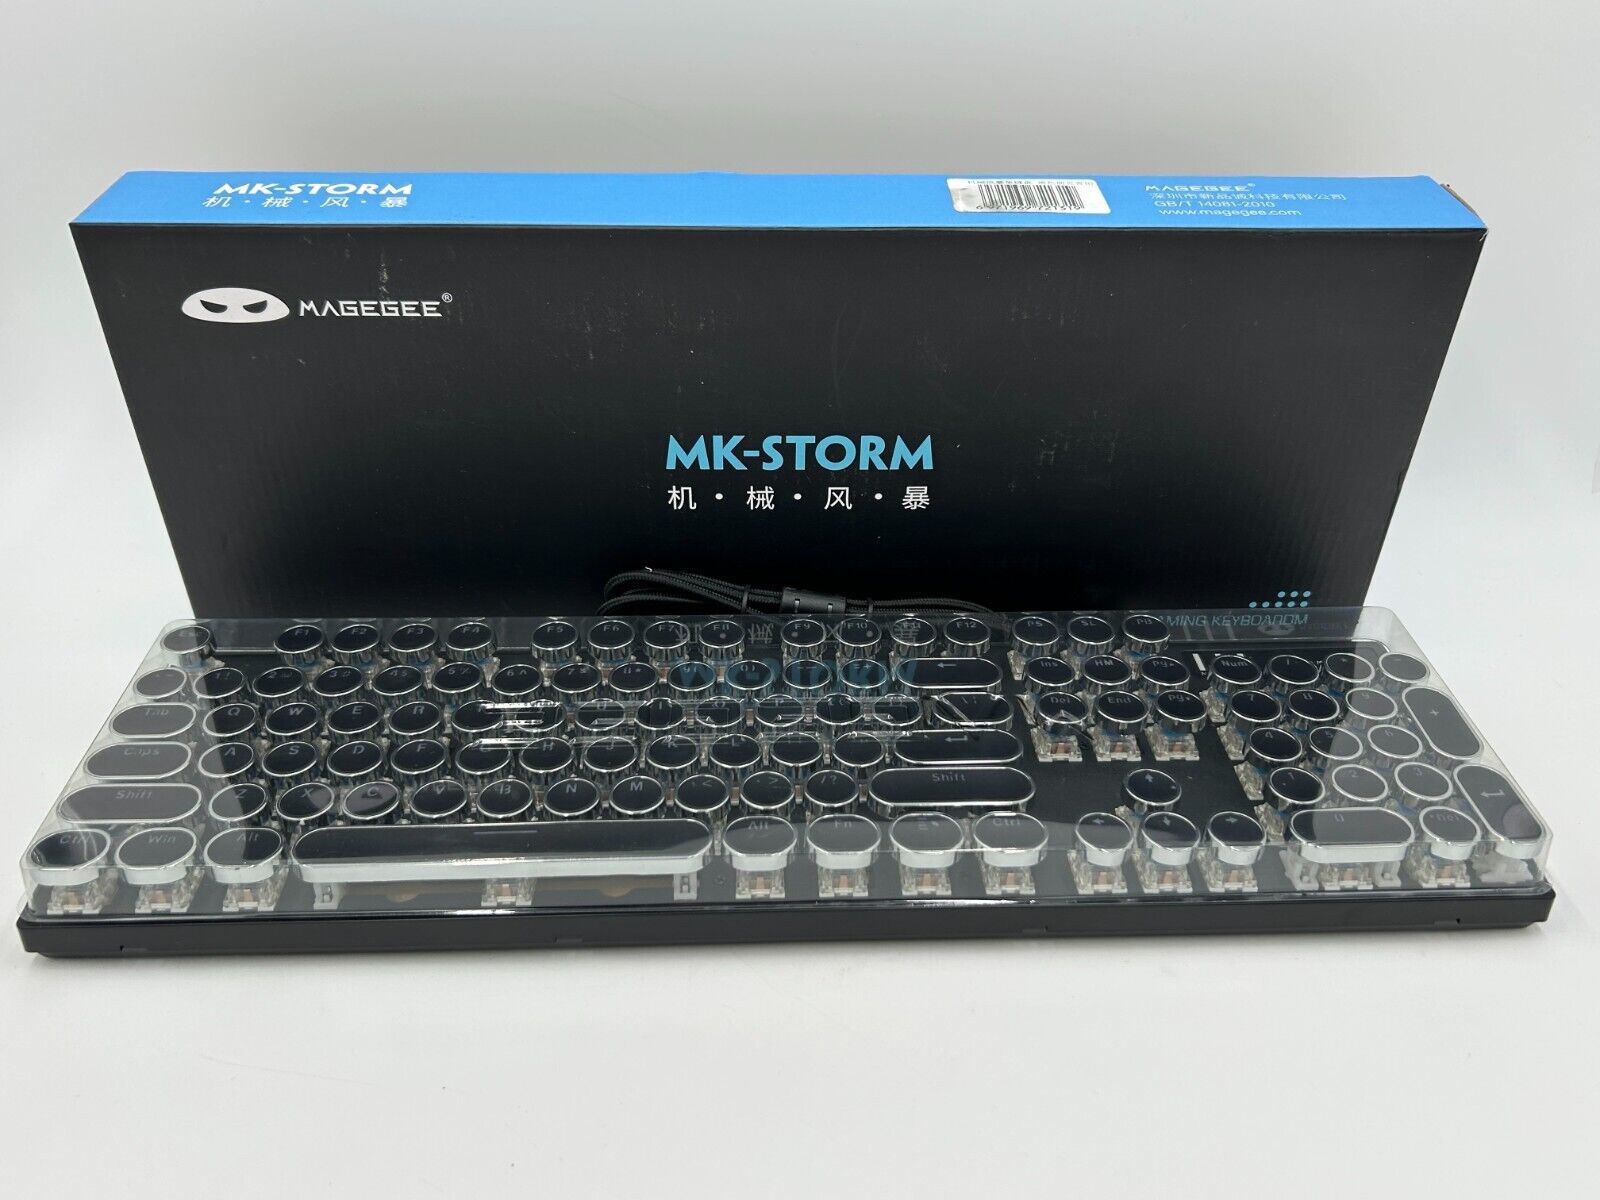 MK-STORM Gaming Keyboard MAGEGEE Gaming Keyboard with Typewriter Keys